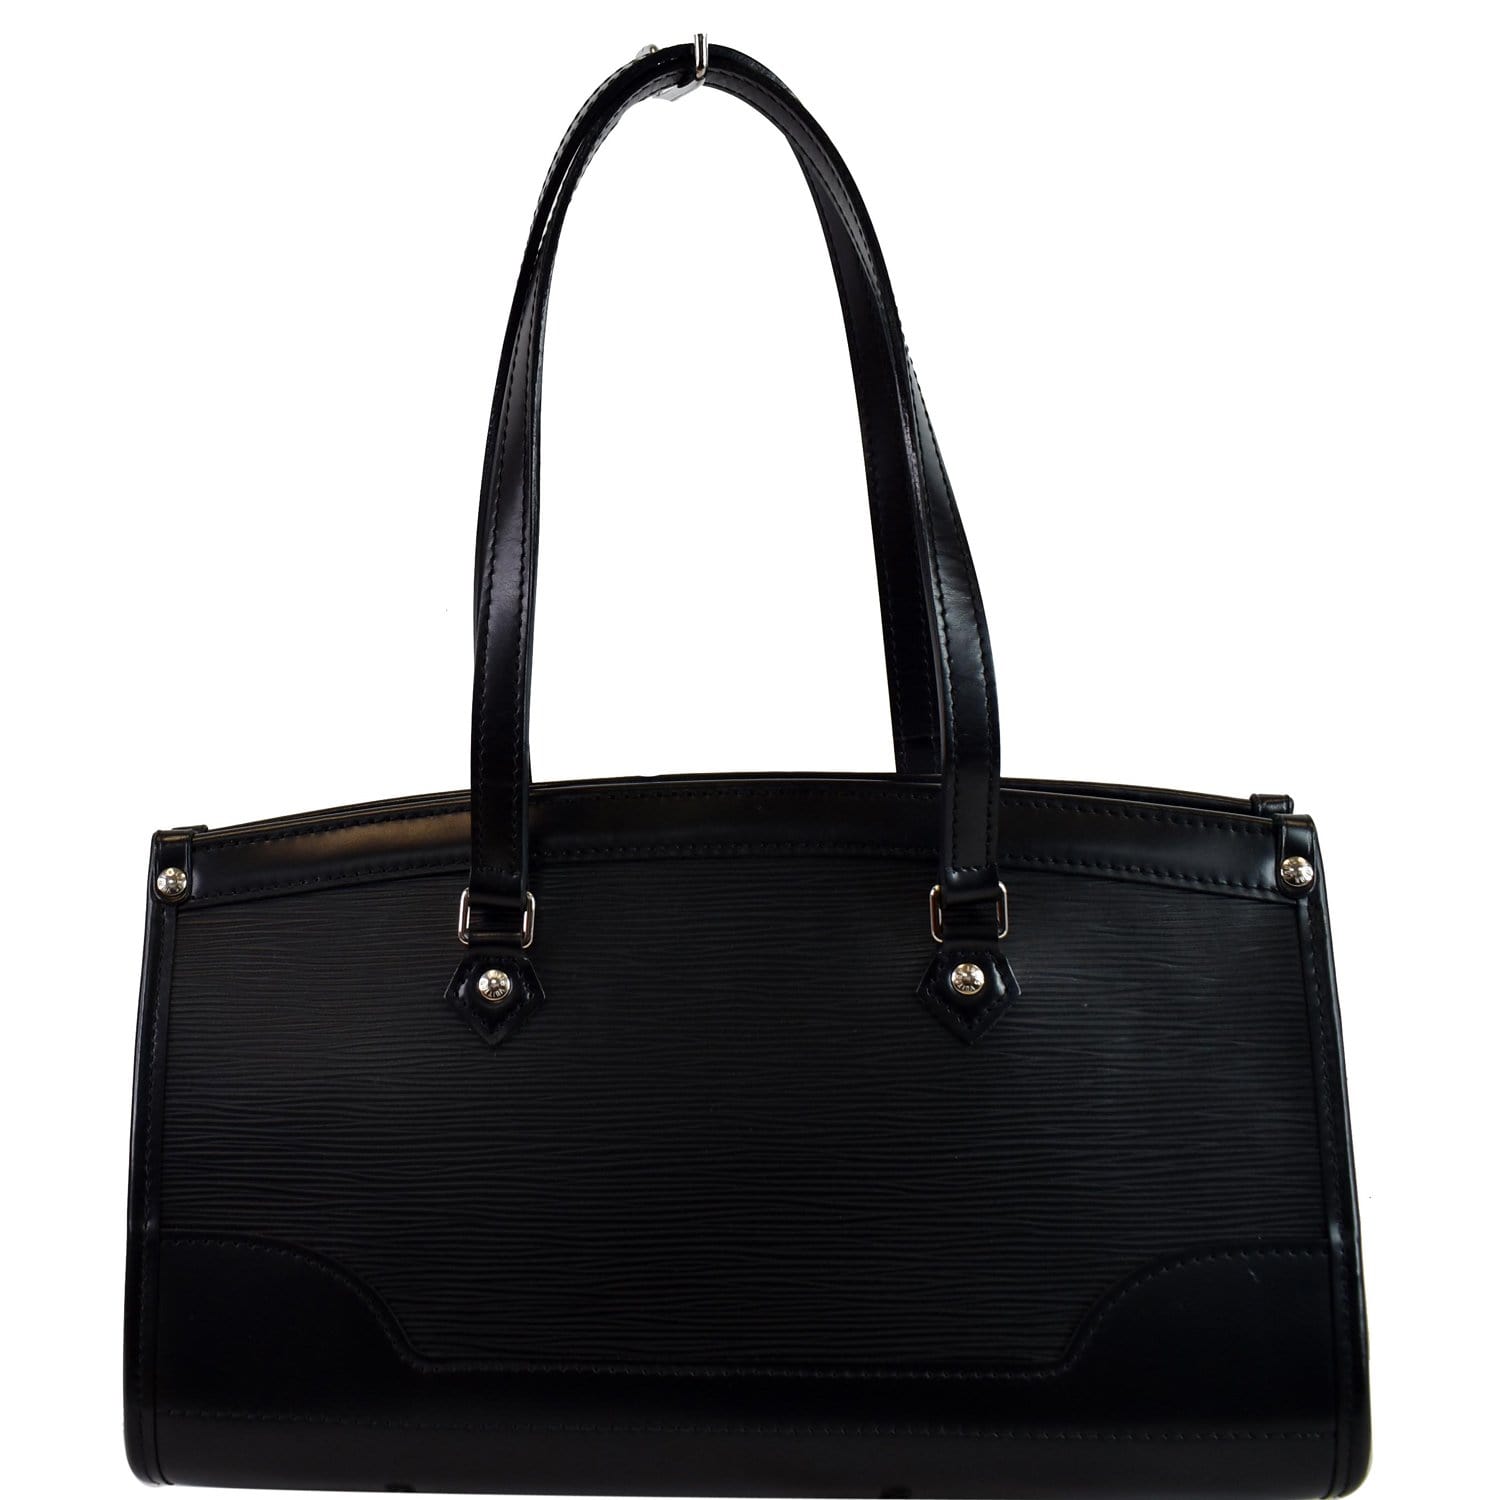 Buy Louis Vuitton Pre-Loved Black Shoulder Bag in Epi Leather for